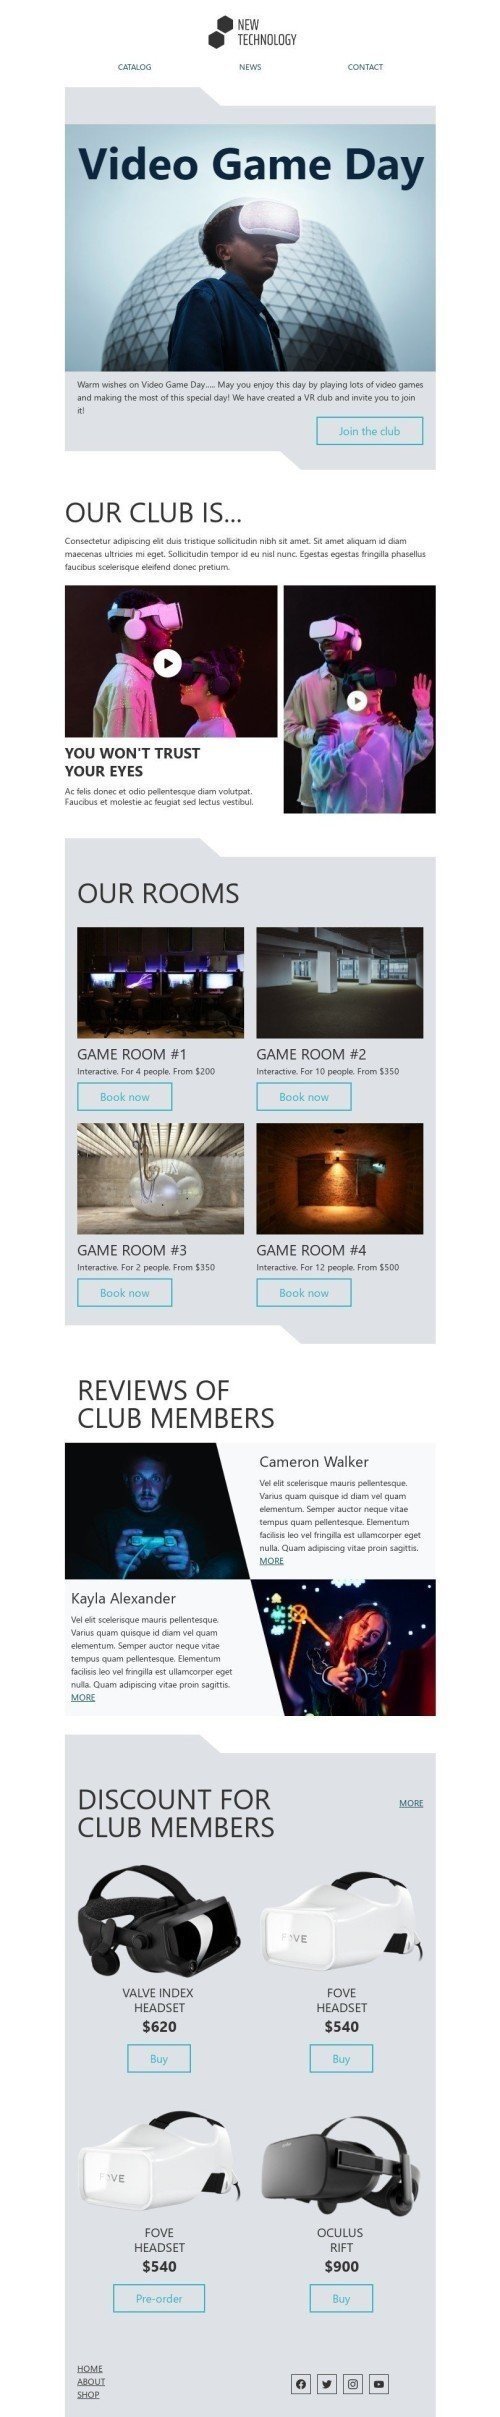 Modelo de E-mail de «Junte-se ao clube» de Dia do videogame para a indústria de Gadgets Visualização de dispositivo móvel